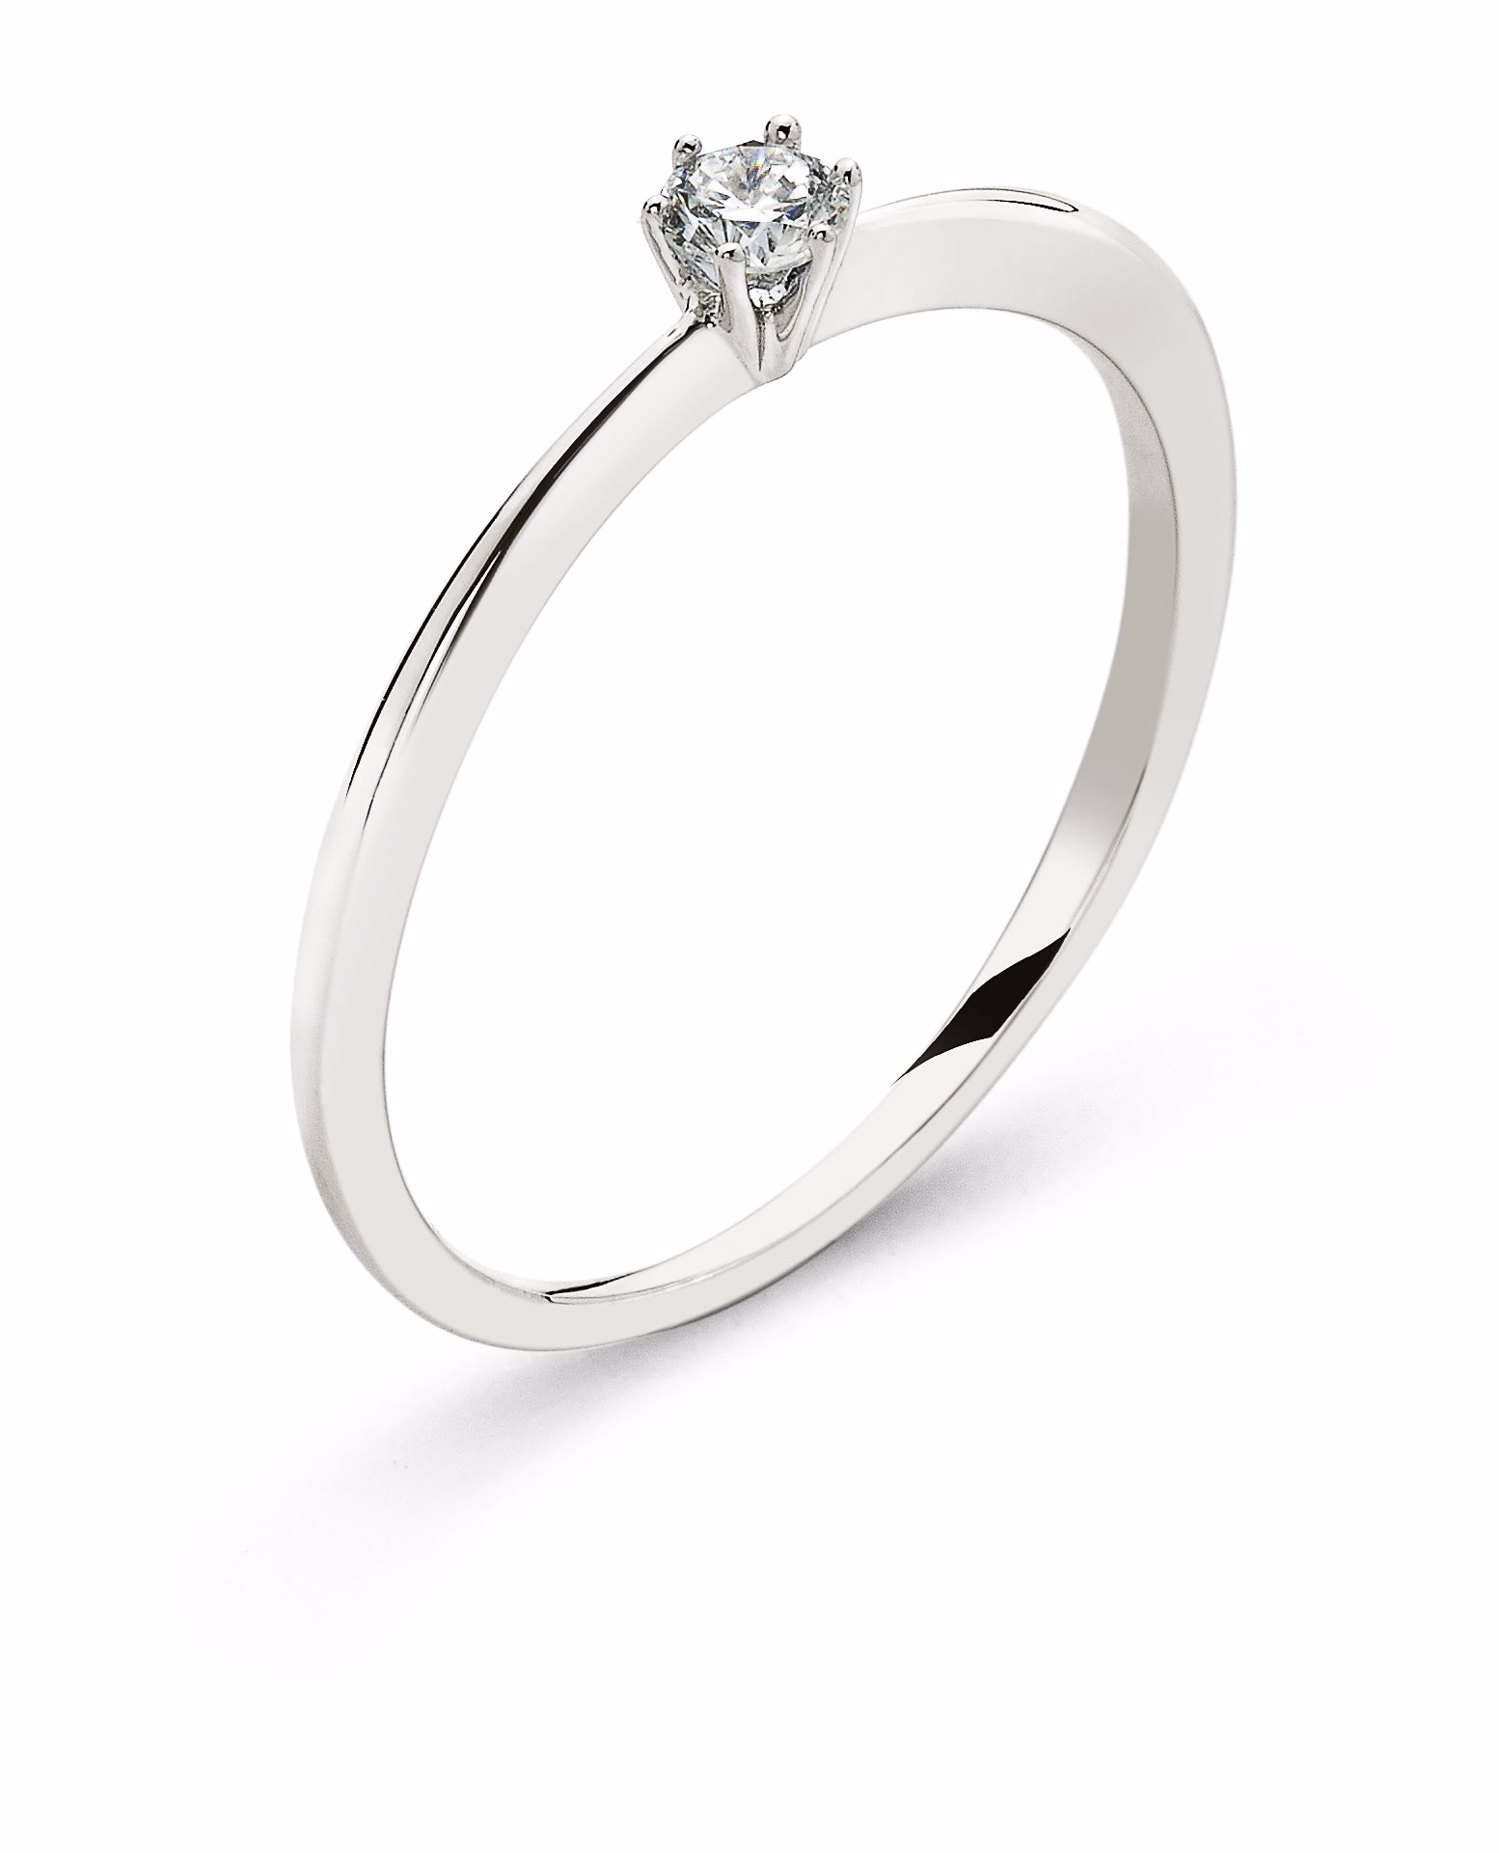 AURONOS Prestige Bague solitaire en or blanc 18K diamant 0.10ct